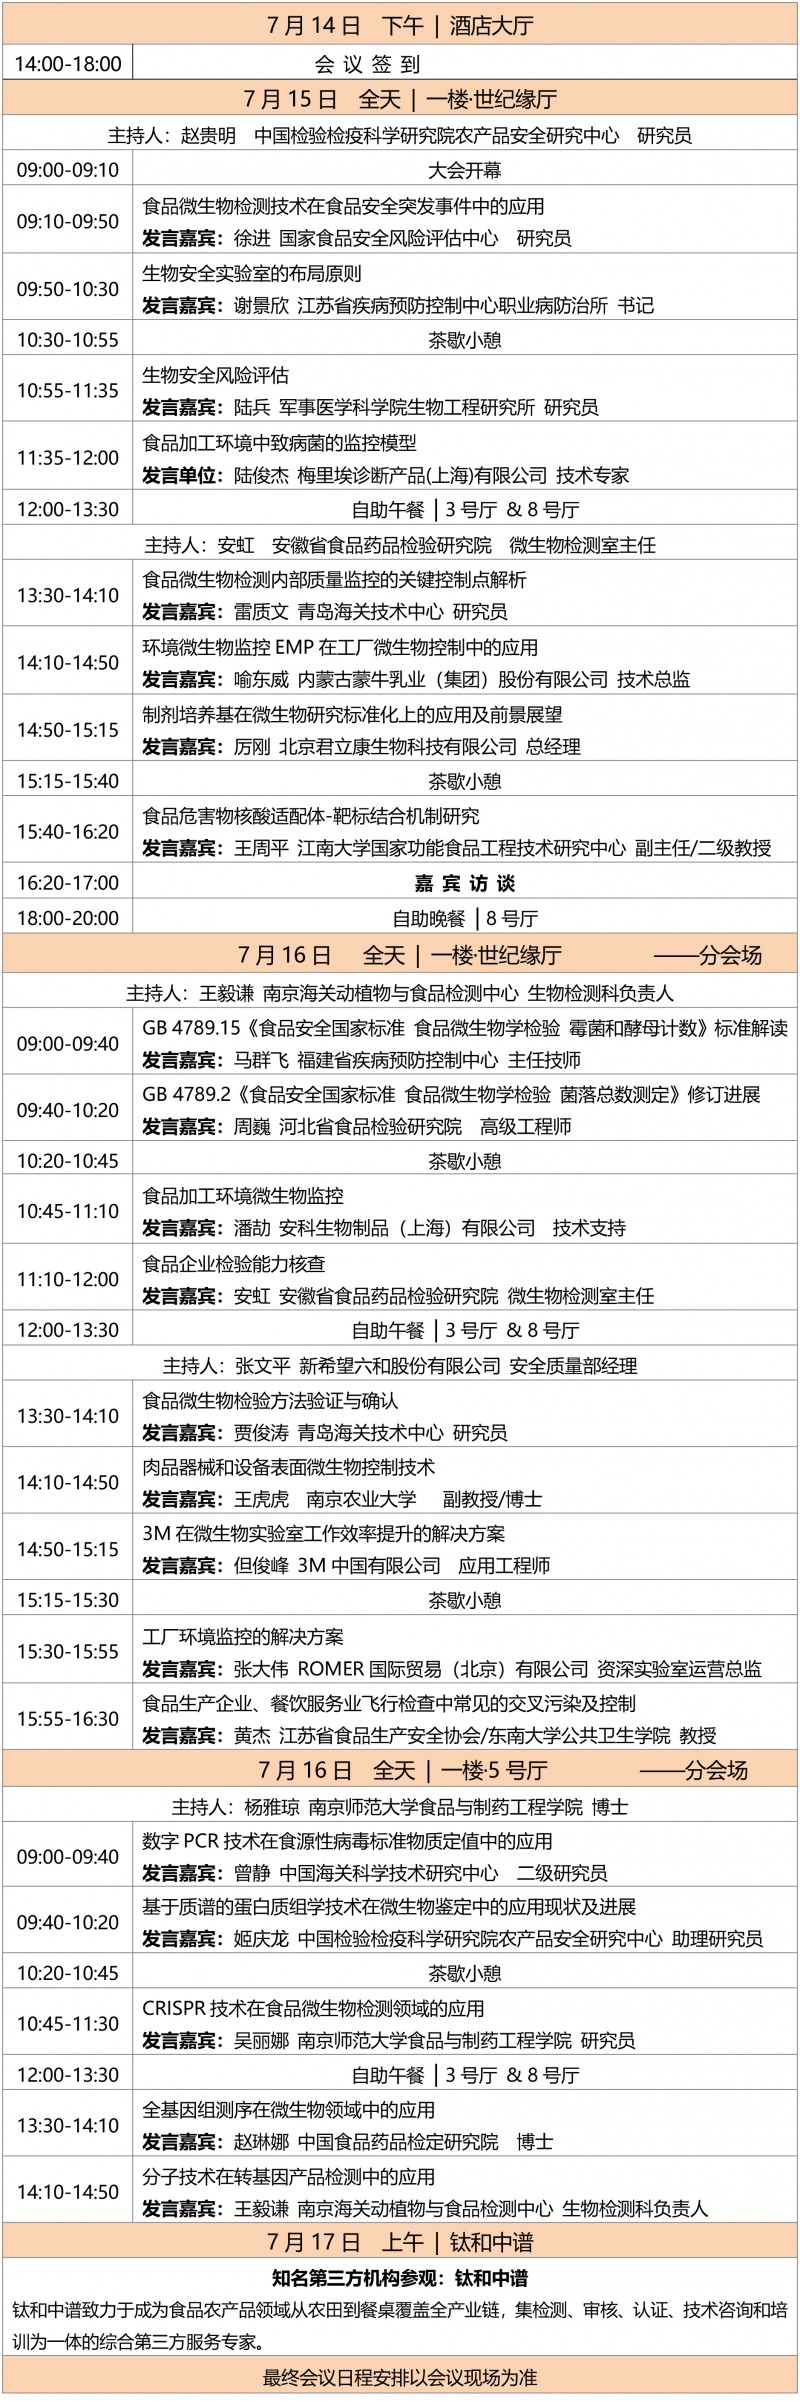 7.14南京第11届食品微生物会议-日程安排7